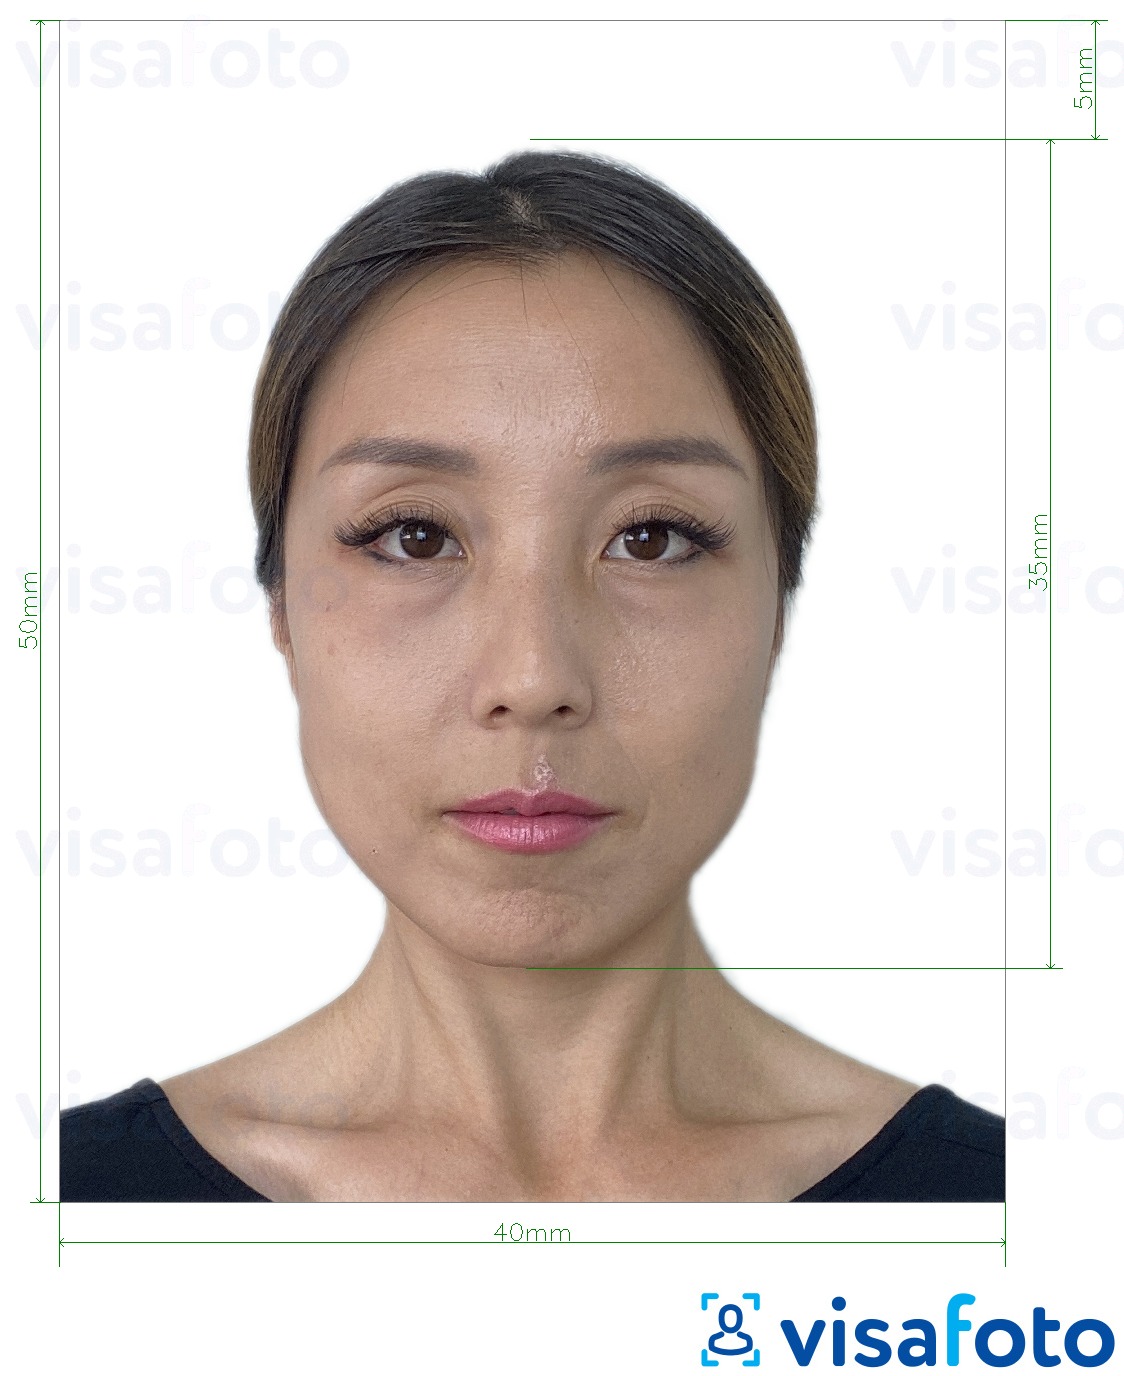 Гонконг паспорты 40x50 мм (4x5 см) үшін нақты мөлшер өлшемі бар фото үлгісі